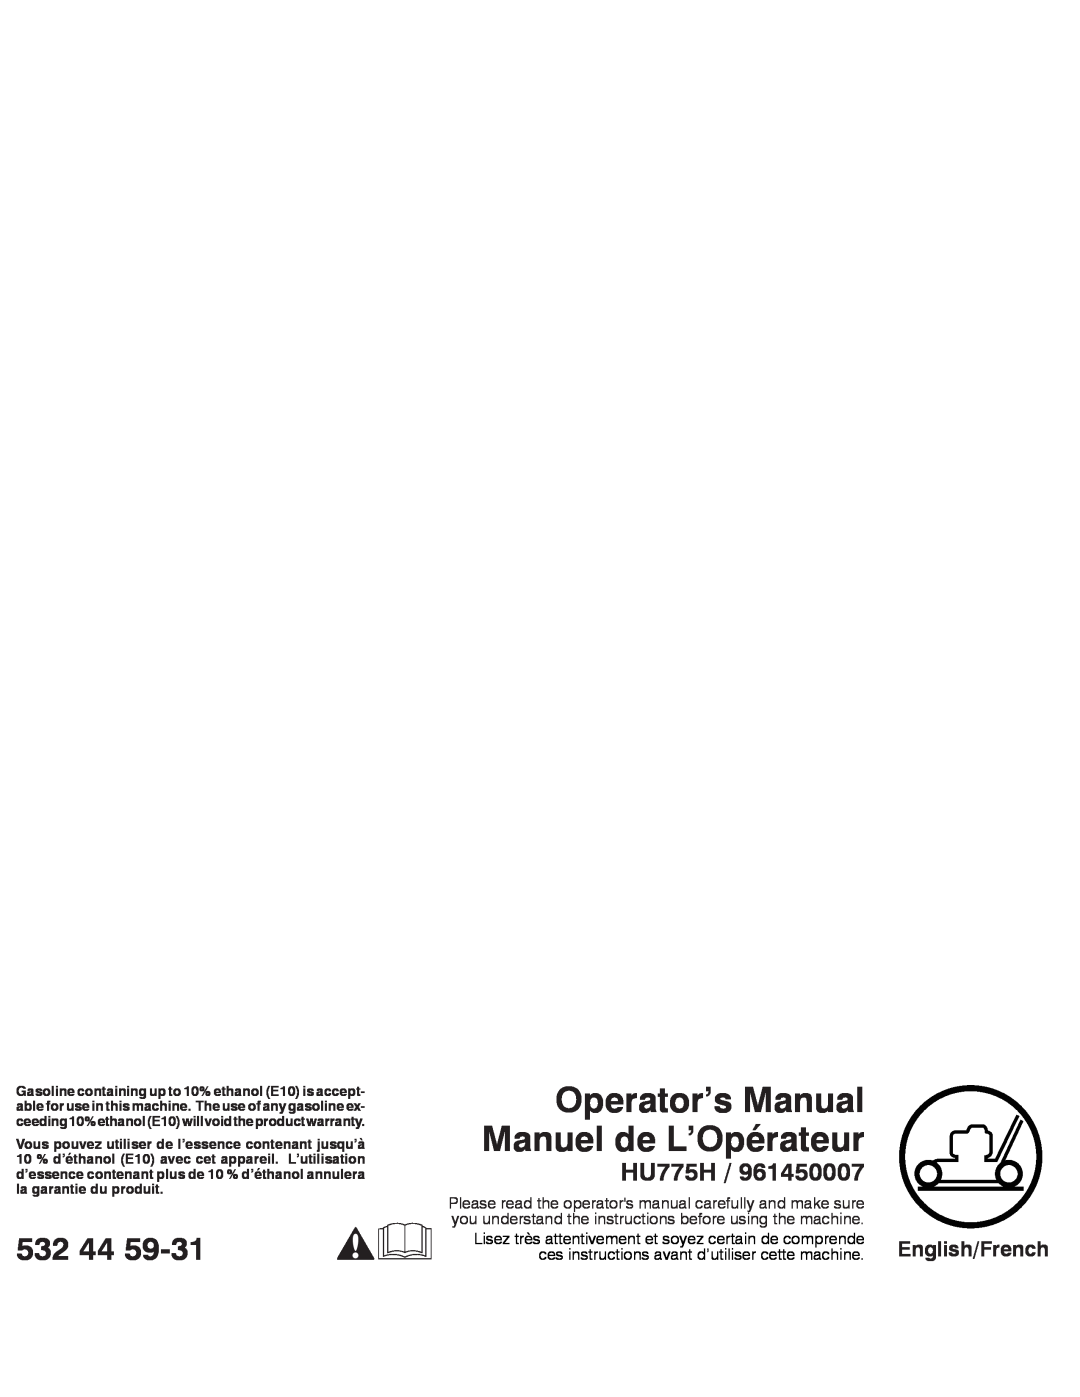 Husqvarna HU775H / 961450007 warranty Operator’s Manual Manuel de L’Opérateur, 532 